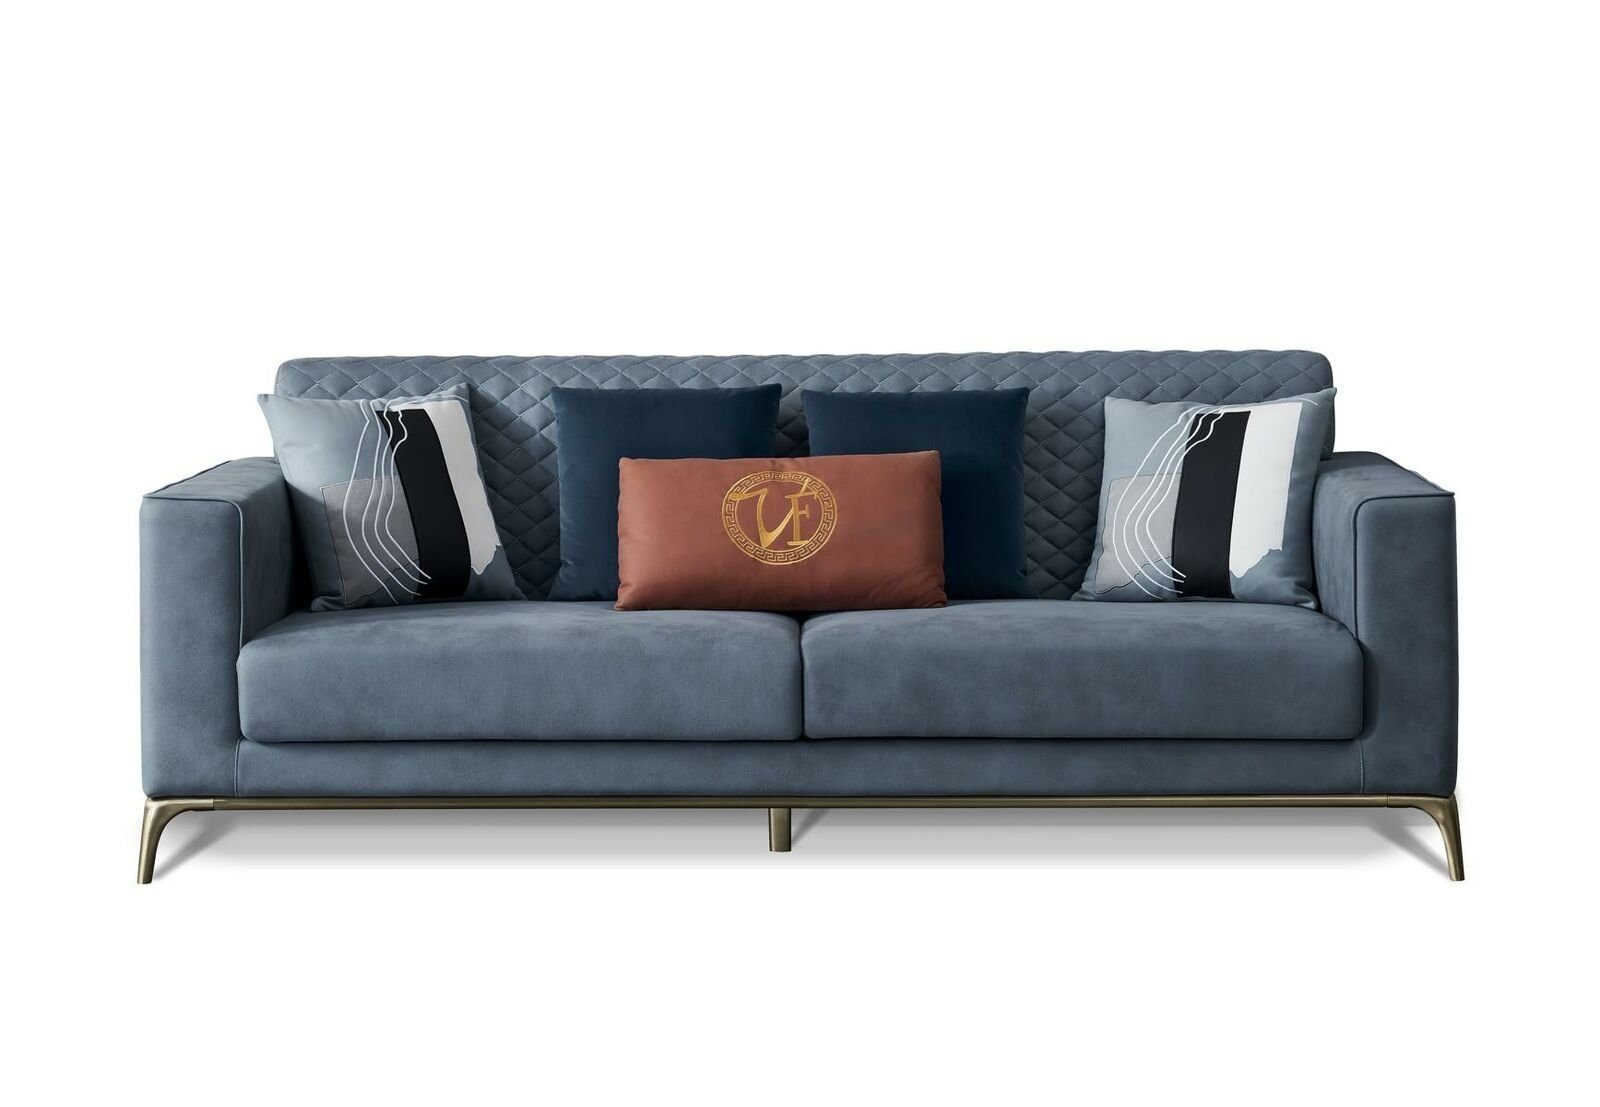 JVmoebel Sofa Europe Made Neu, Möbel in Moderner Design Polstermöbel Blauer 3-Sitzer Dreisitzer